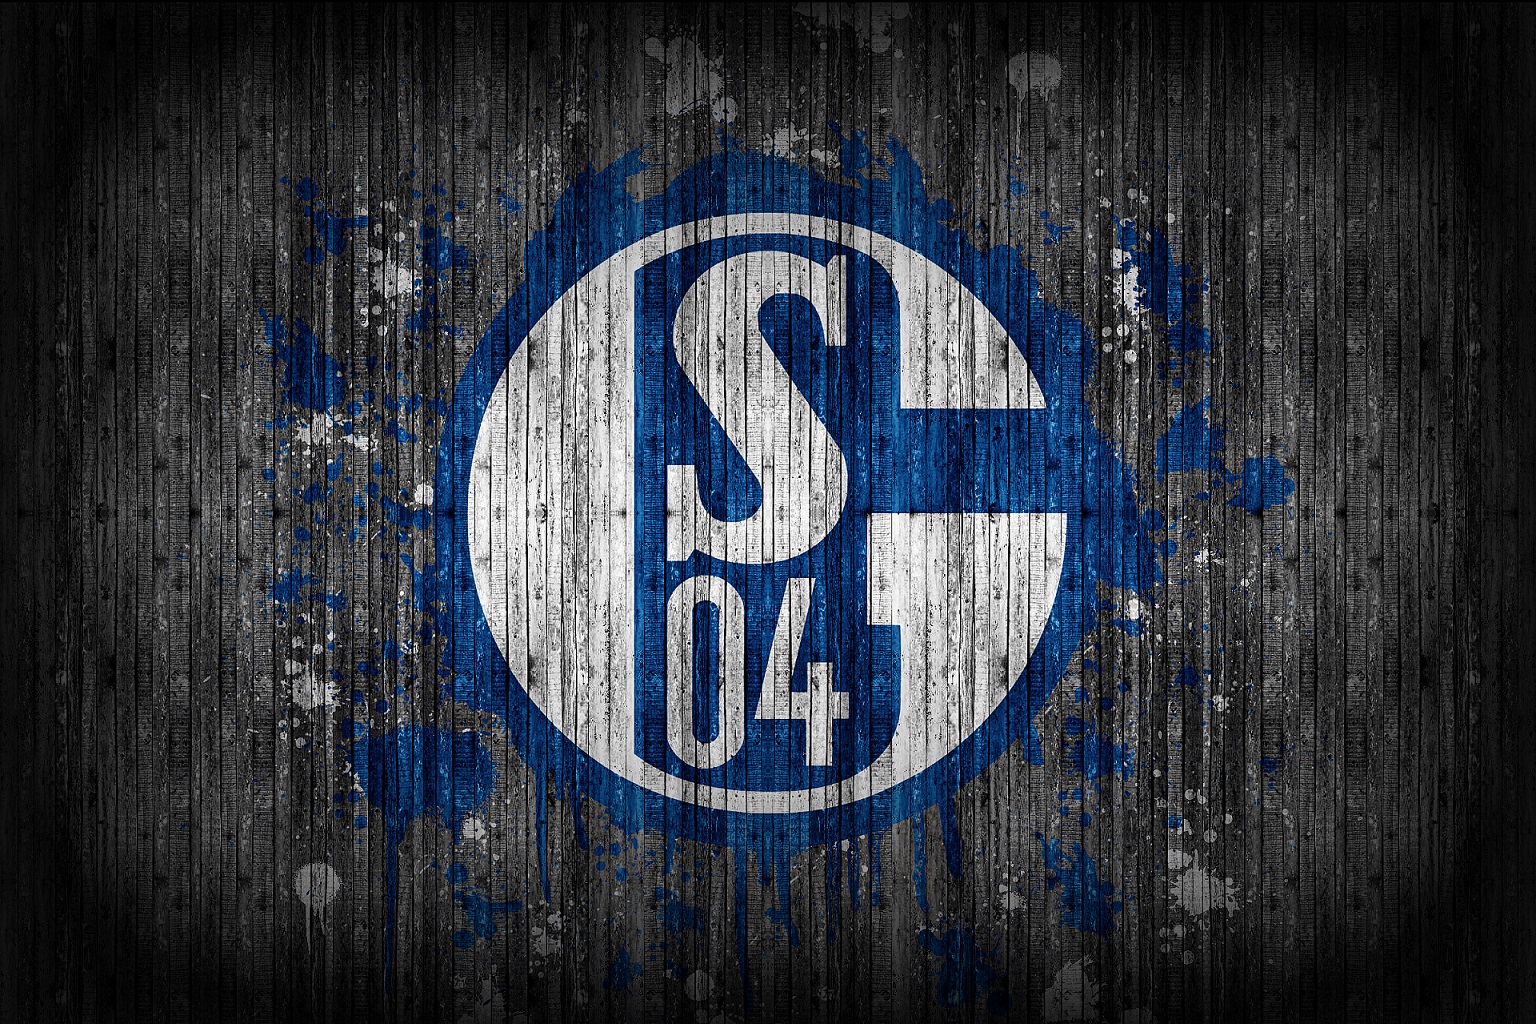 Lol Schalke 04